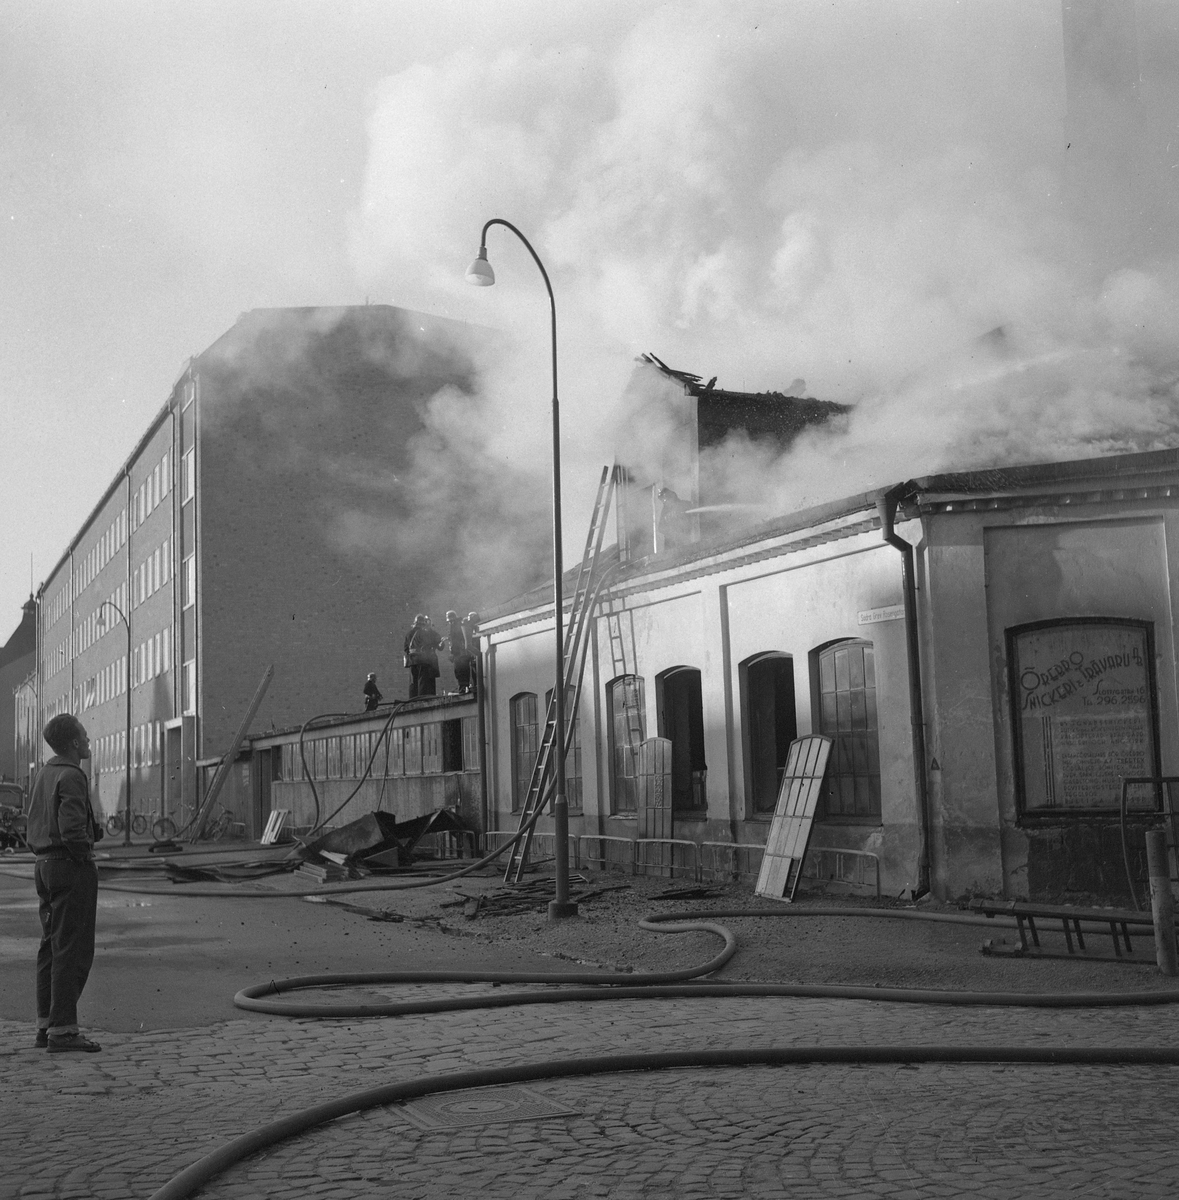 Eldsvåda i Snickerifabrik.
Juli 1956.